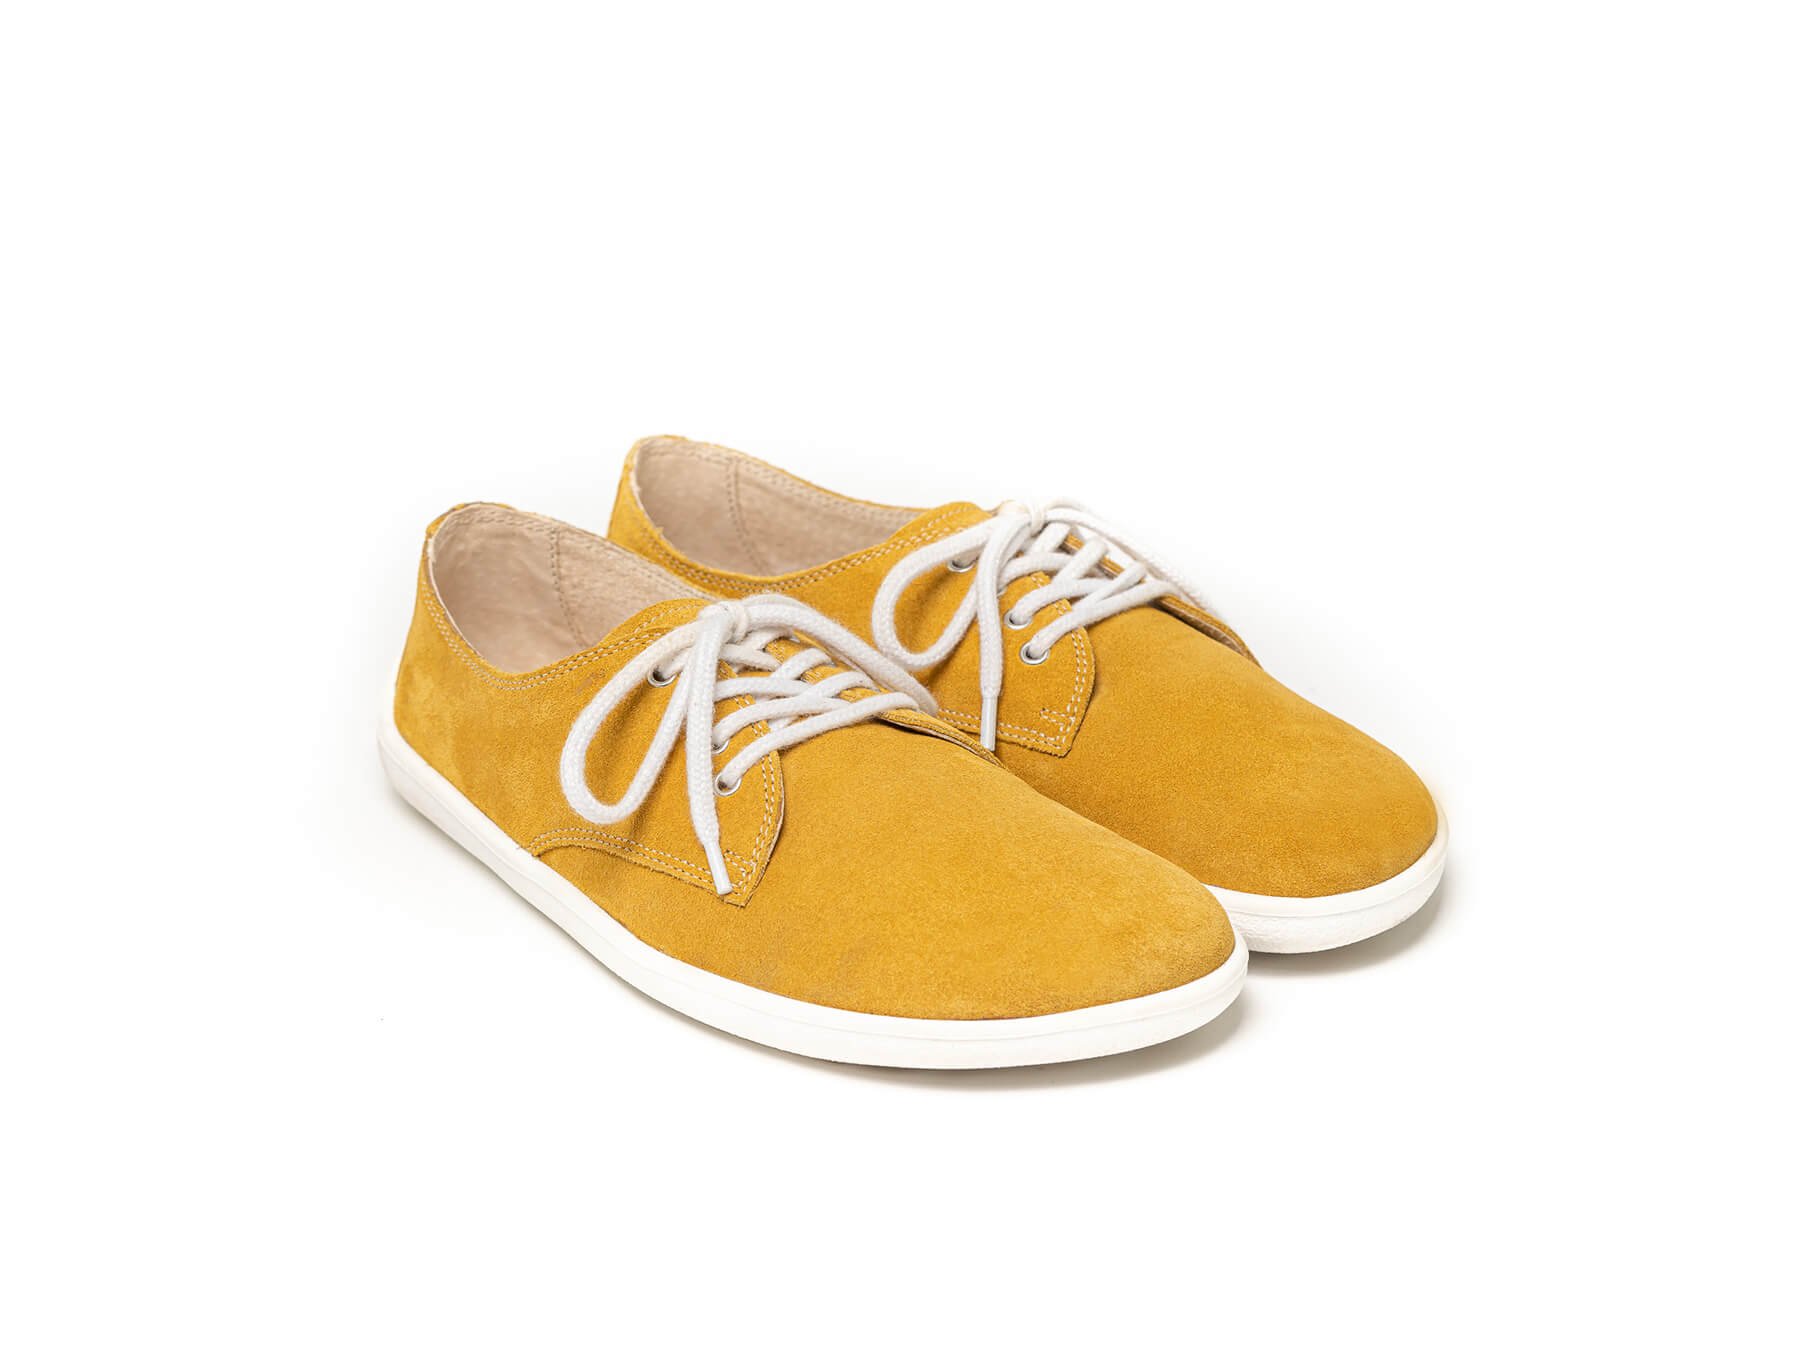 Barefoot Shoes - Be Lenka City - Mustard & White | Be Lenka